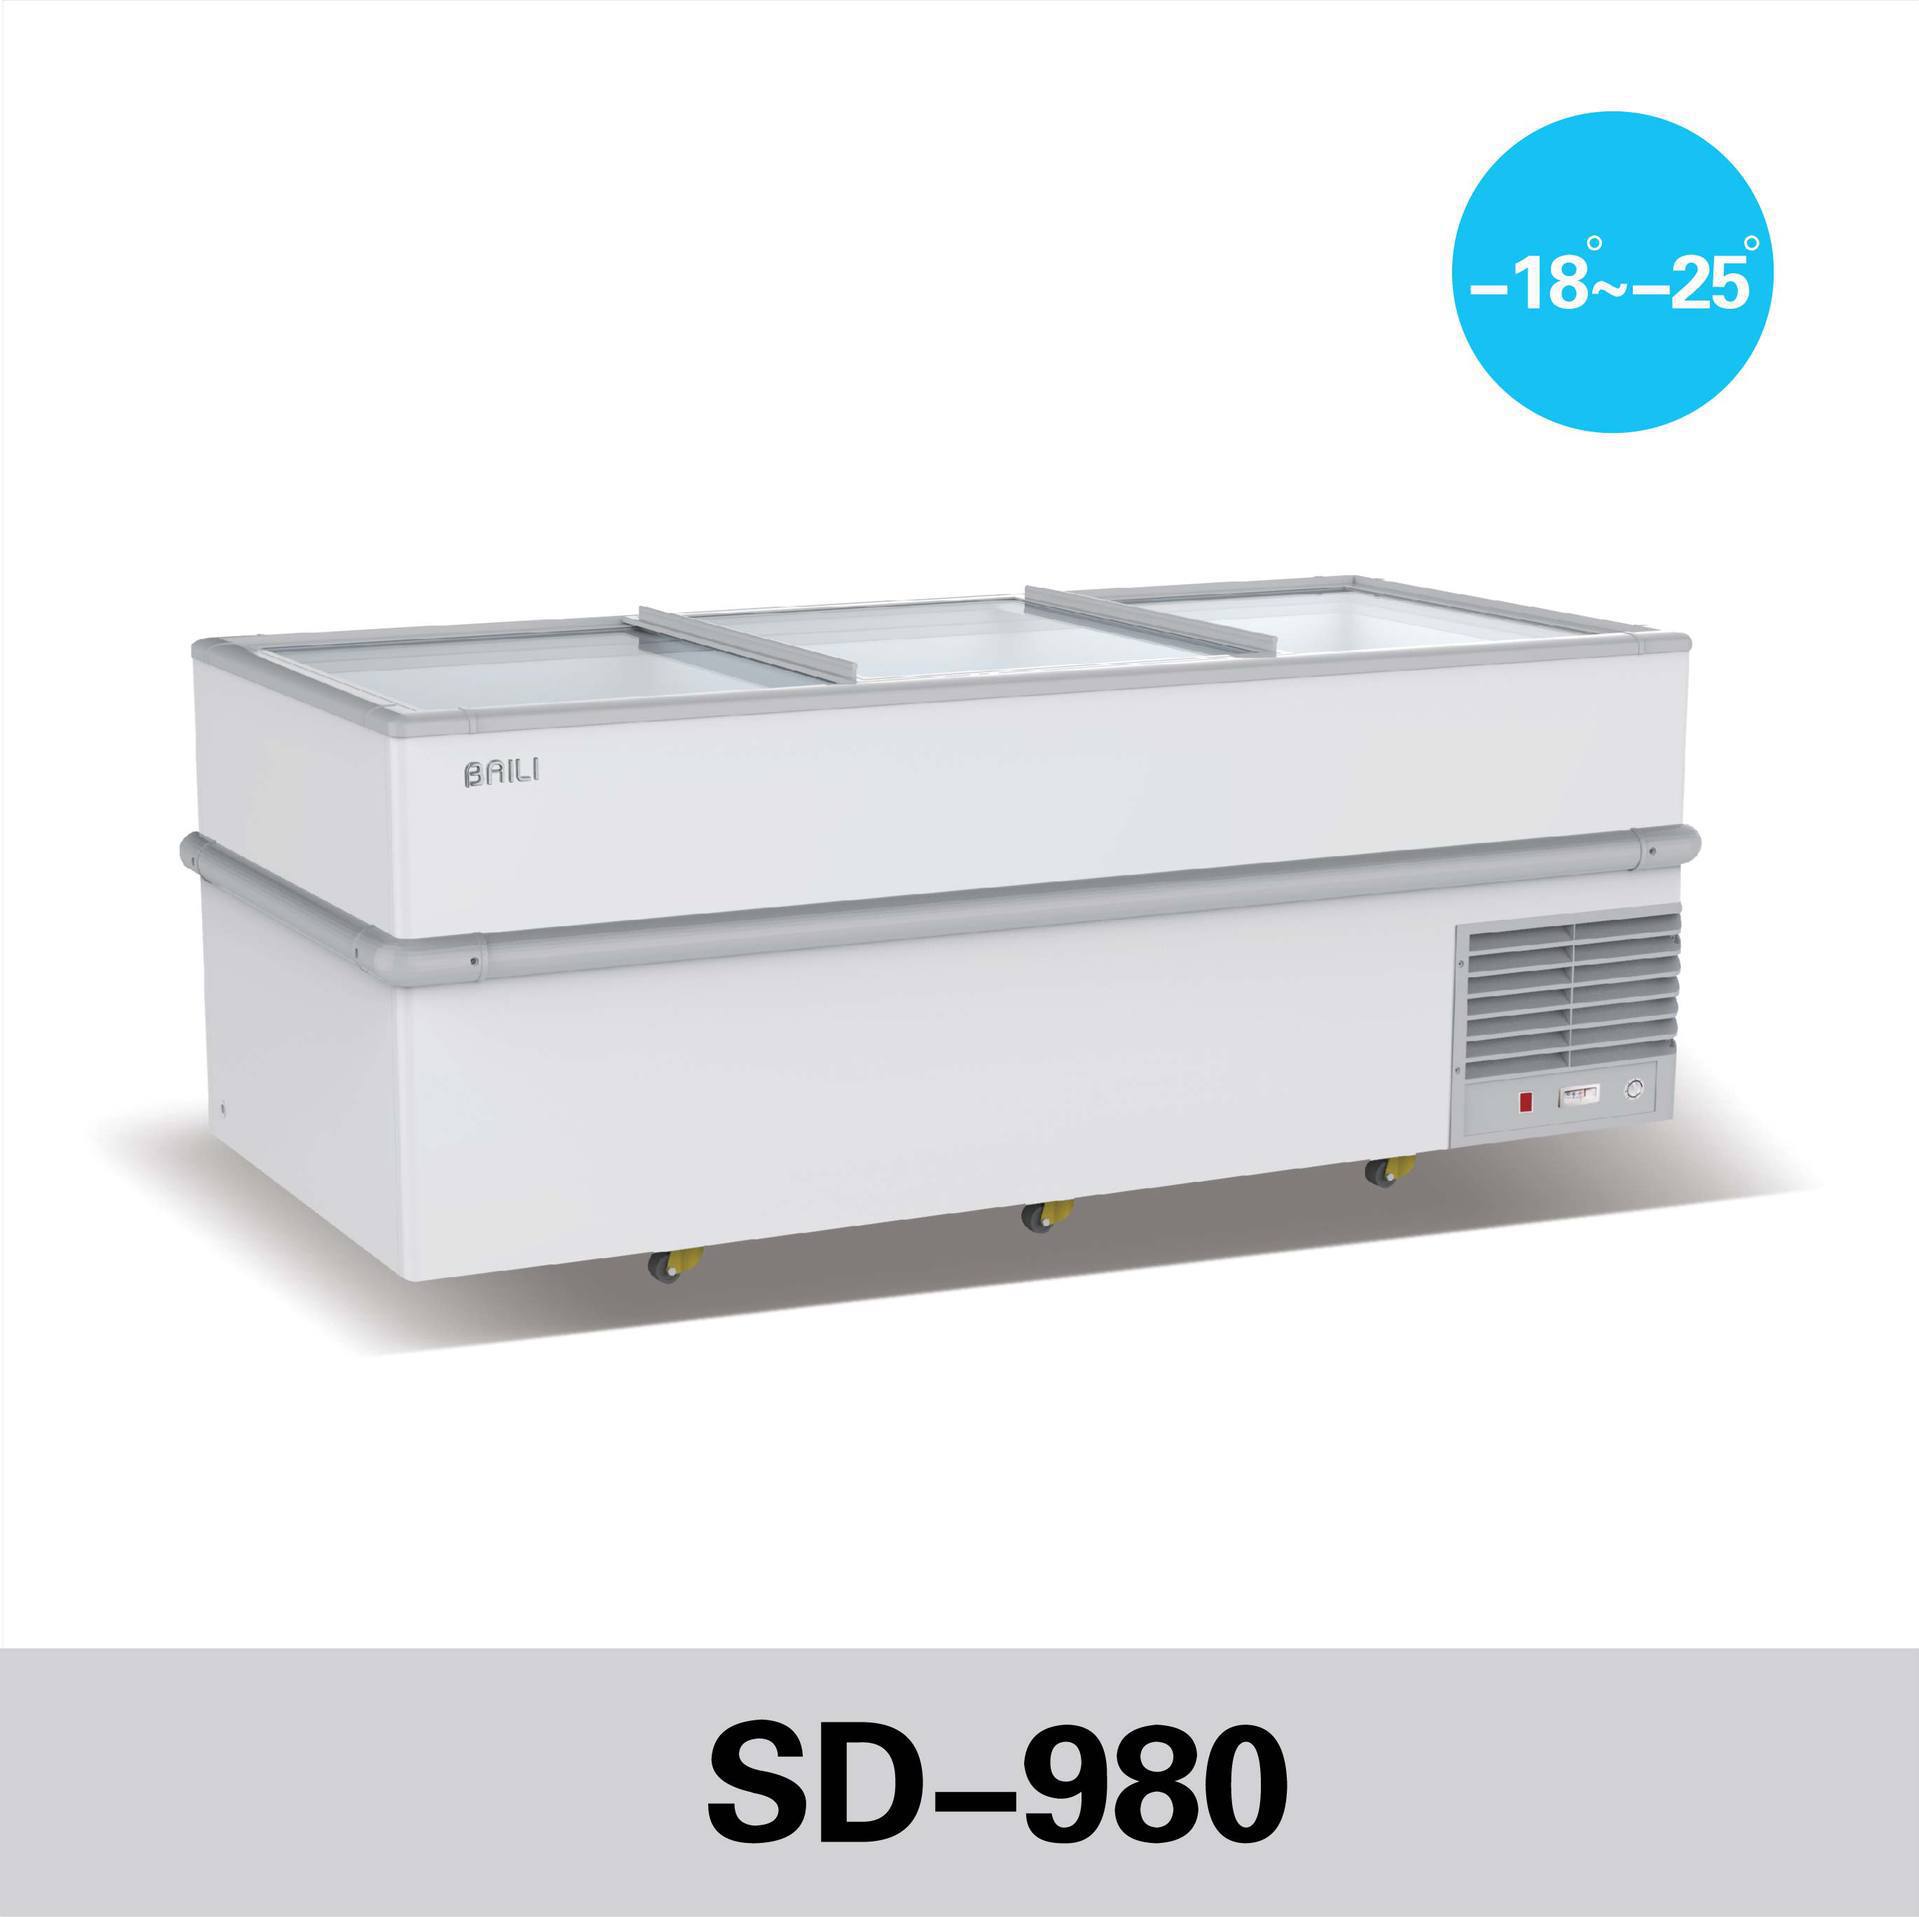 百利SD-980三门低温展示岛柜 玻璃门卧式冷冻柜 火锅丸子冰柜